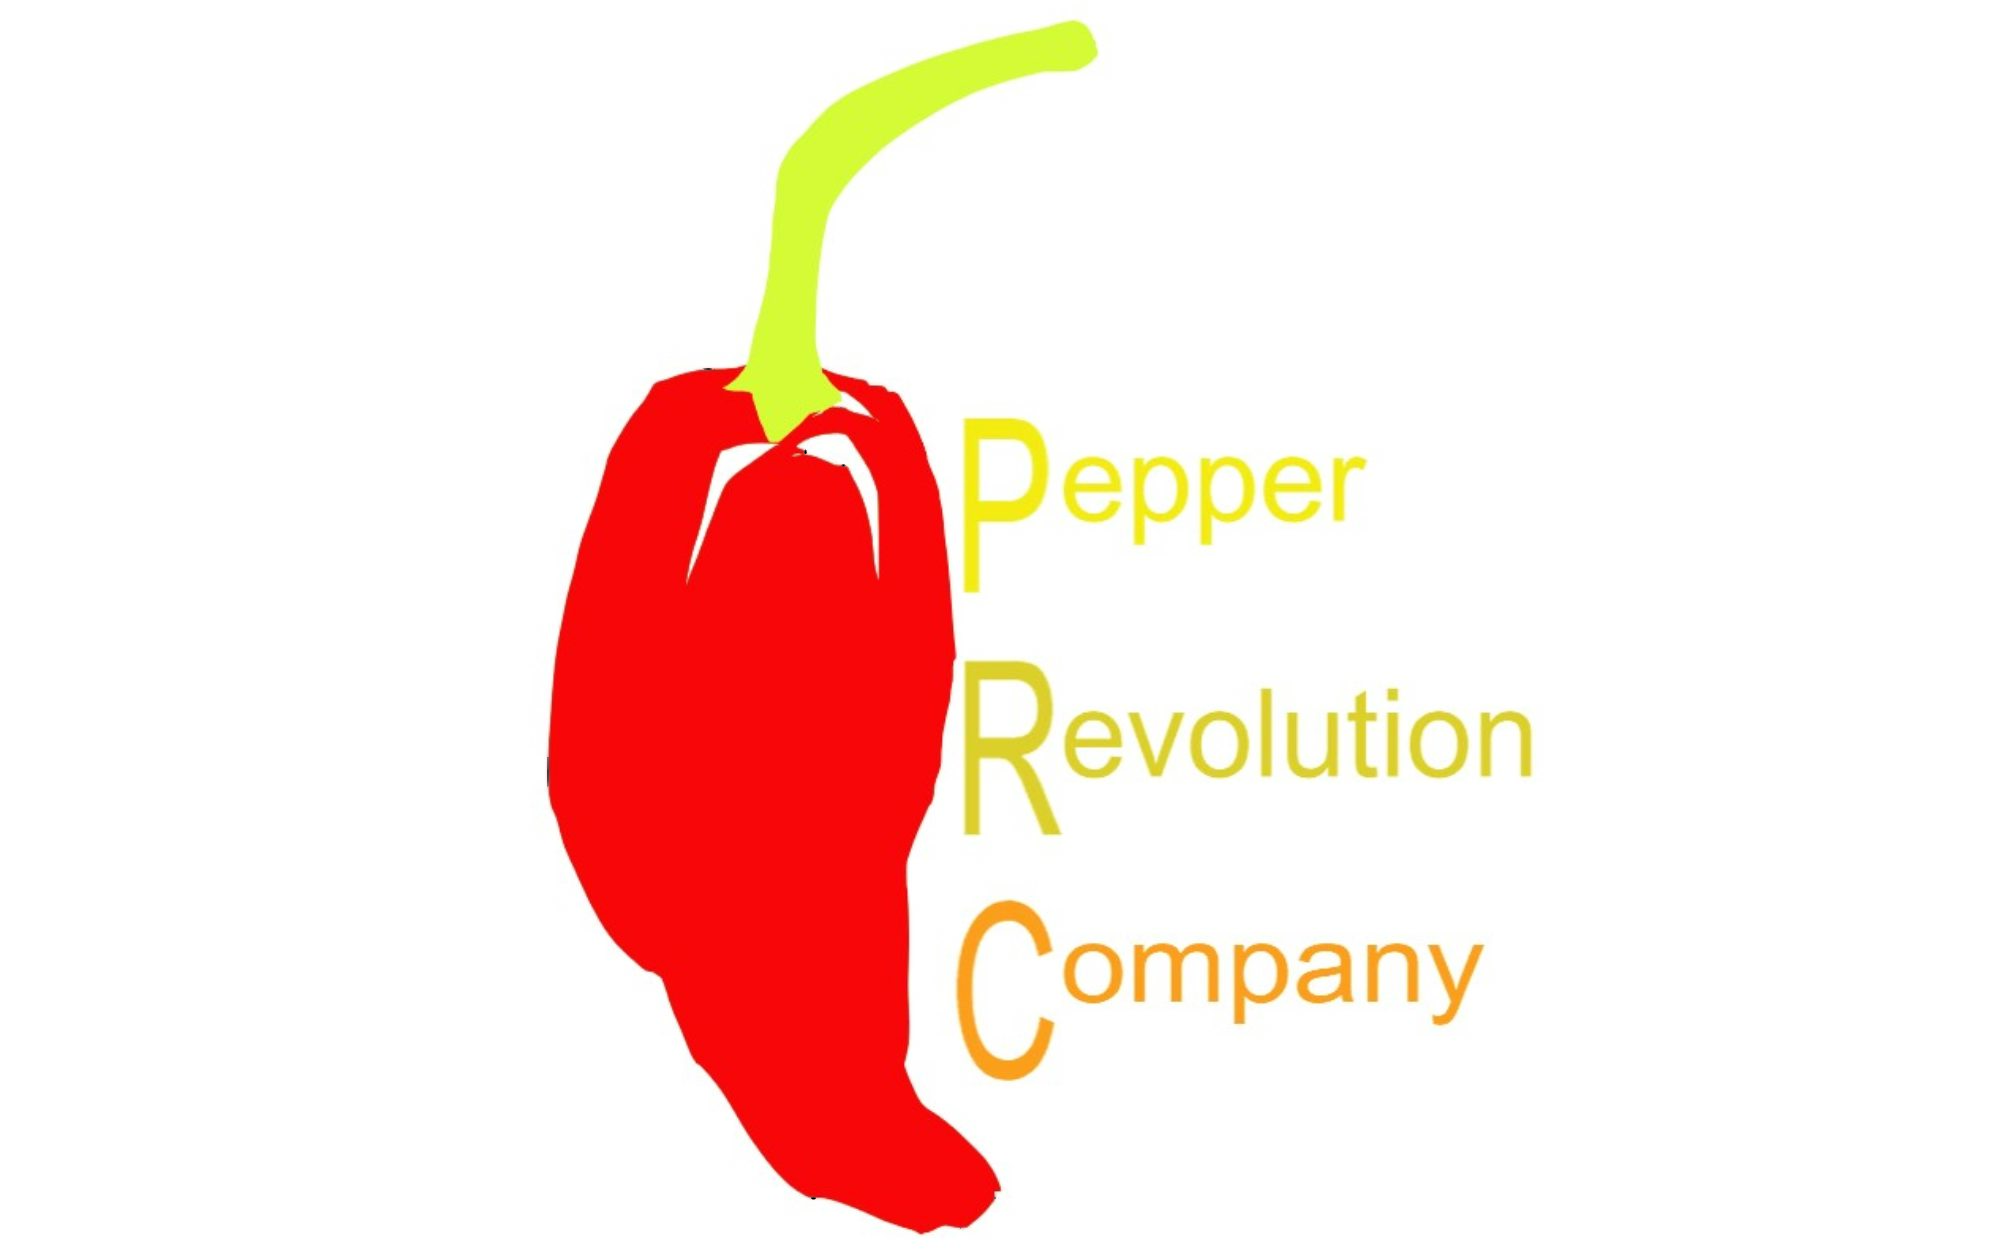 PEPPER REVOLUTION COMPANY